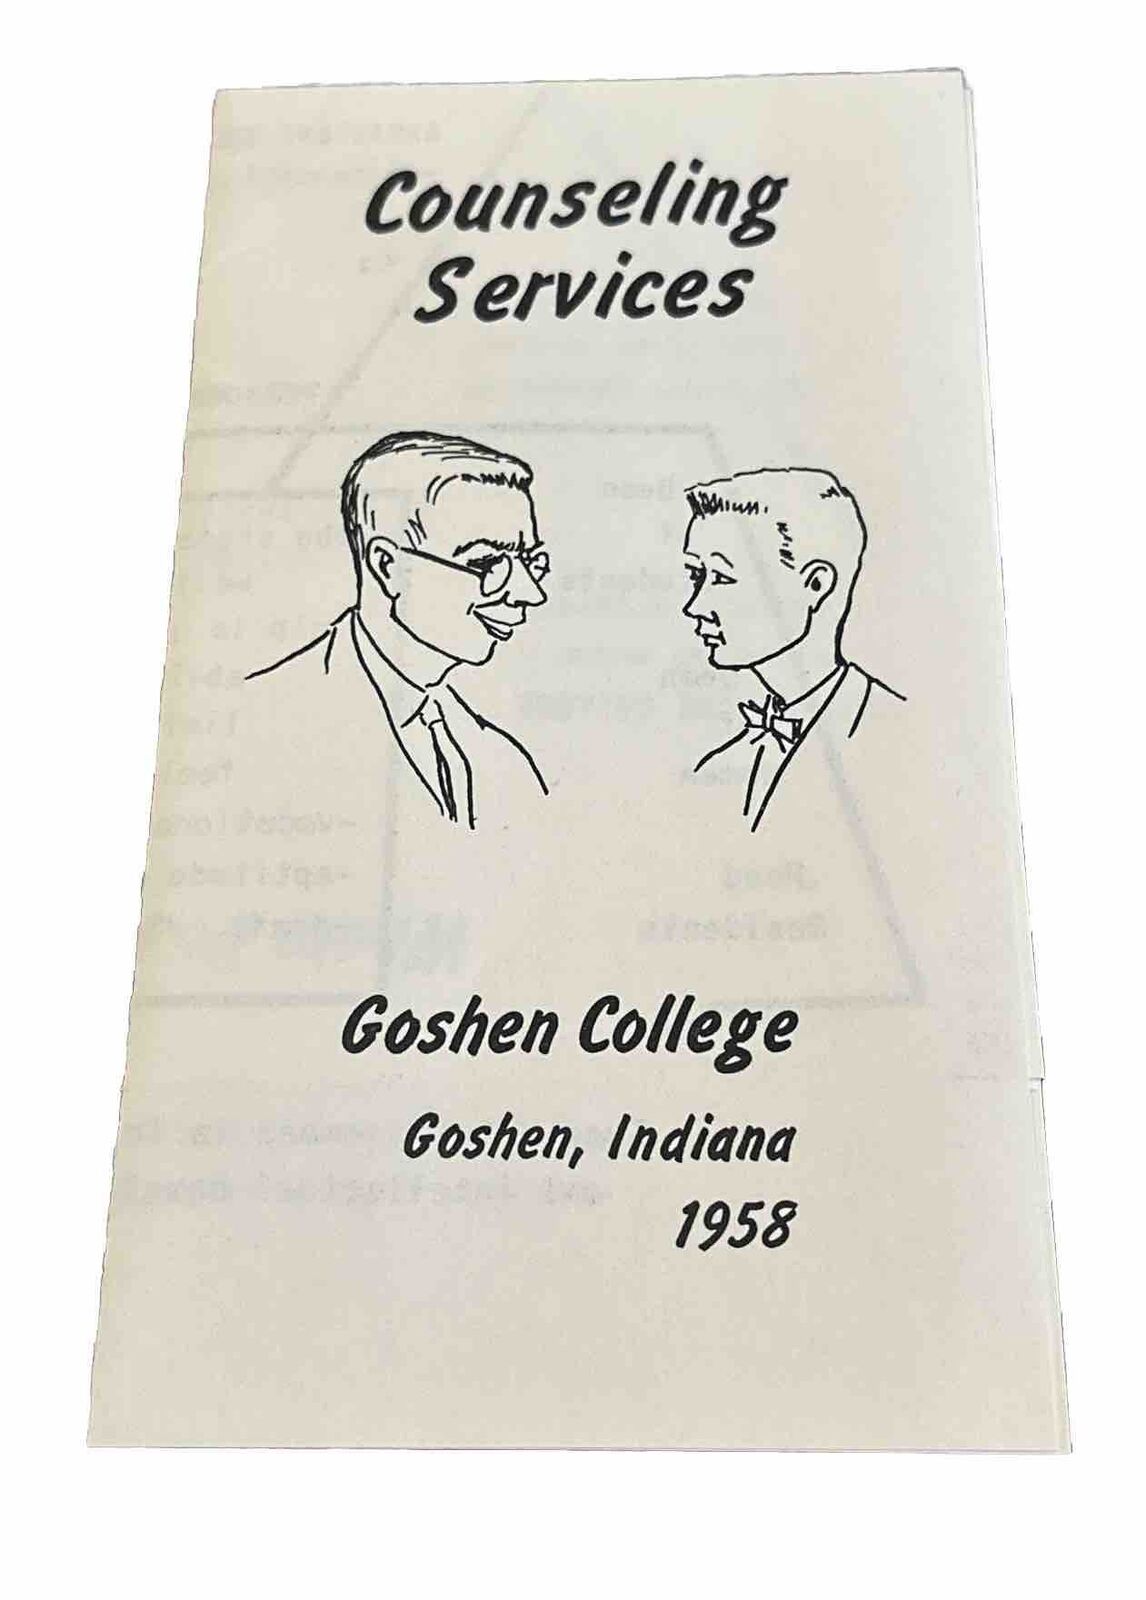 Counseling Services - Goshen College - 1958 - Goshen, Indiana. Brochure VTG 